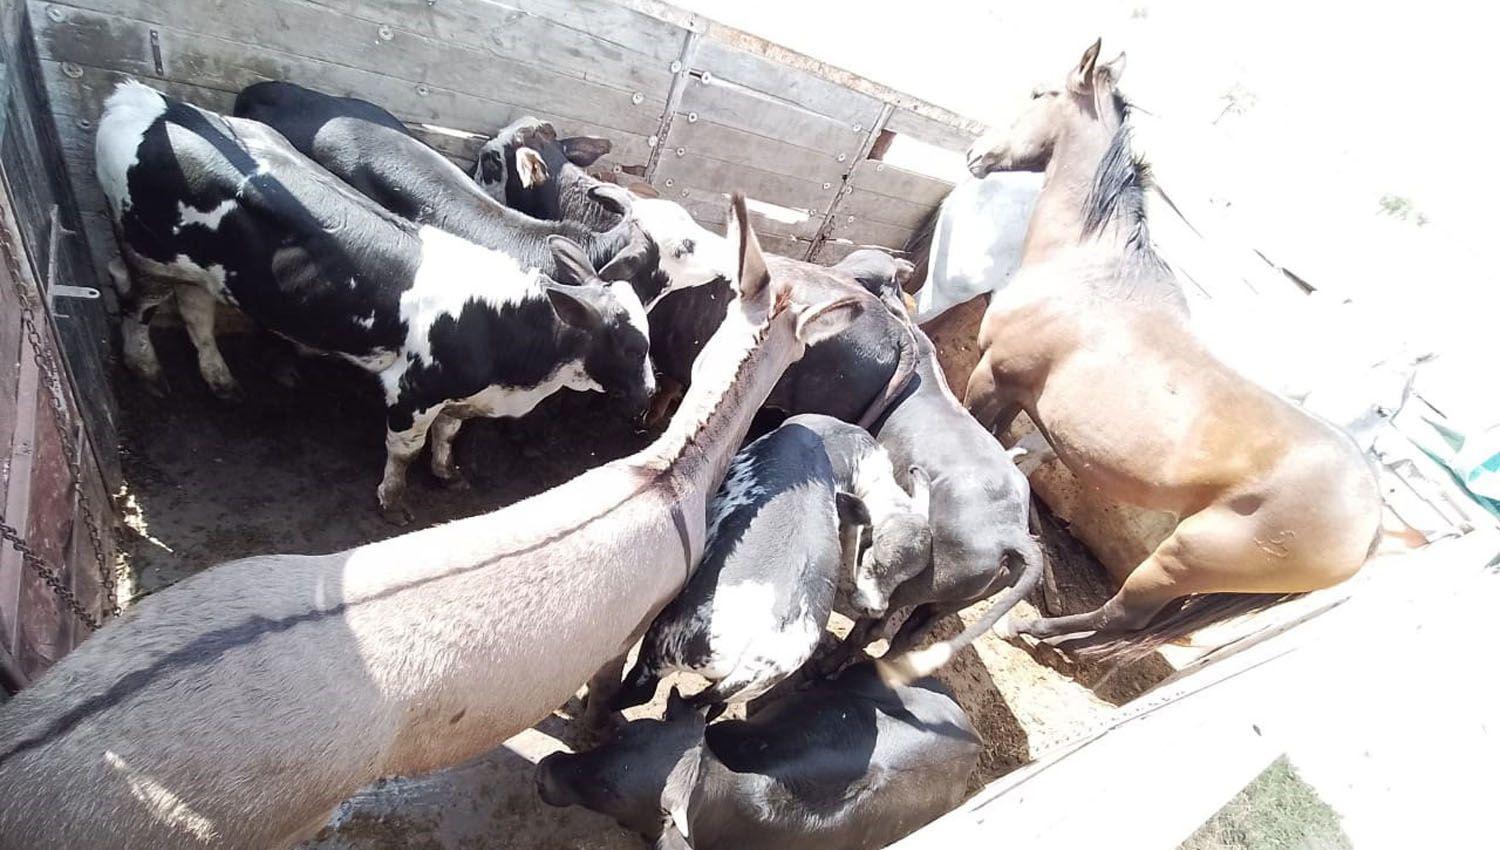 Secuestraron vacas burros y caballos rumbo a un presunto matadero clandestino bandentildeo